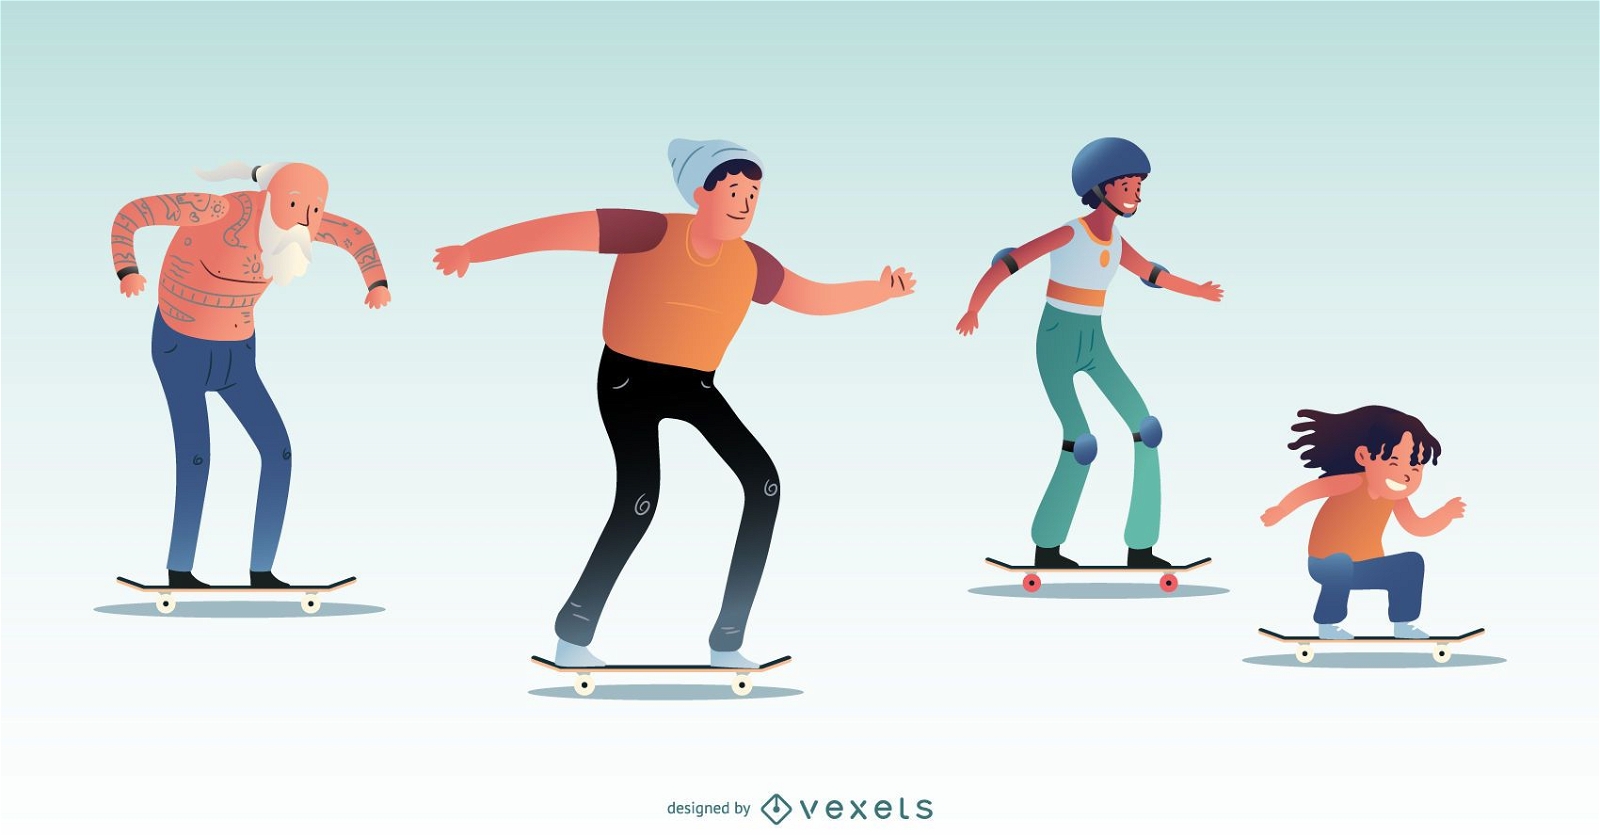 Skateboarding character set